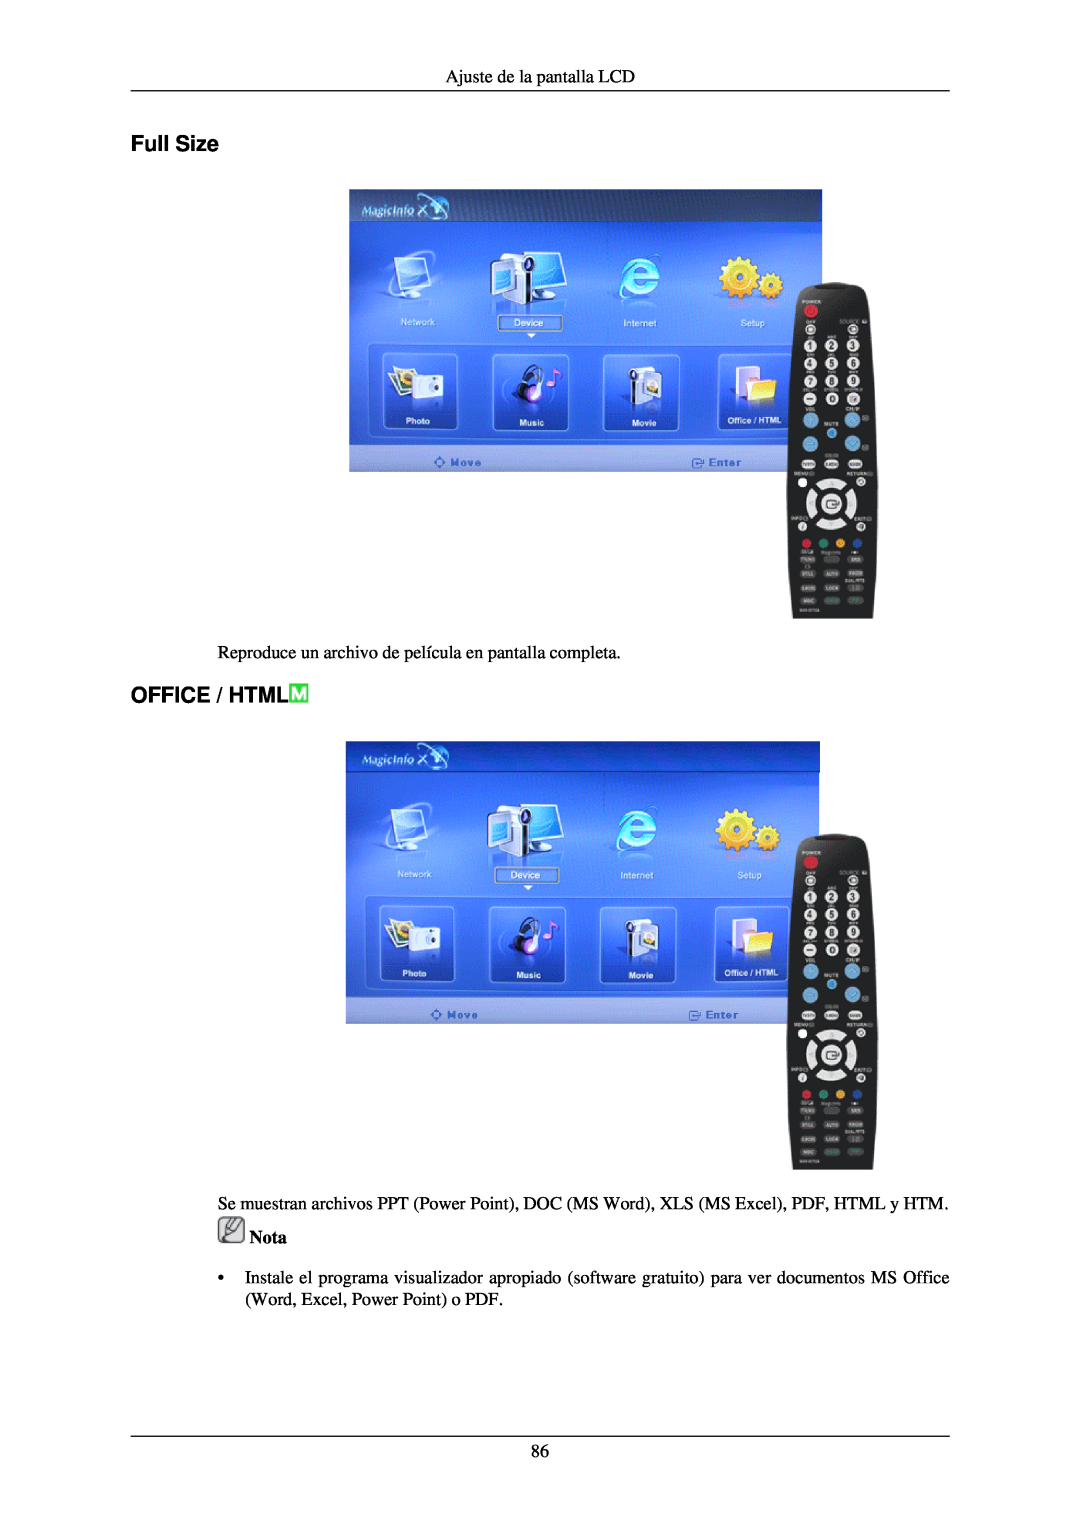 Samsung LH46TCUMBC/EN, LH40TCUMBG/EN, LH40TCQMBG/EN, LH46TCUMBG/EN, LH40TCUMBC/EN manual Full Size, Office / Html, Nota 